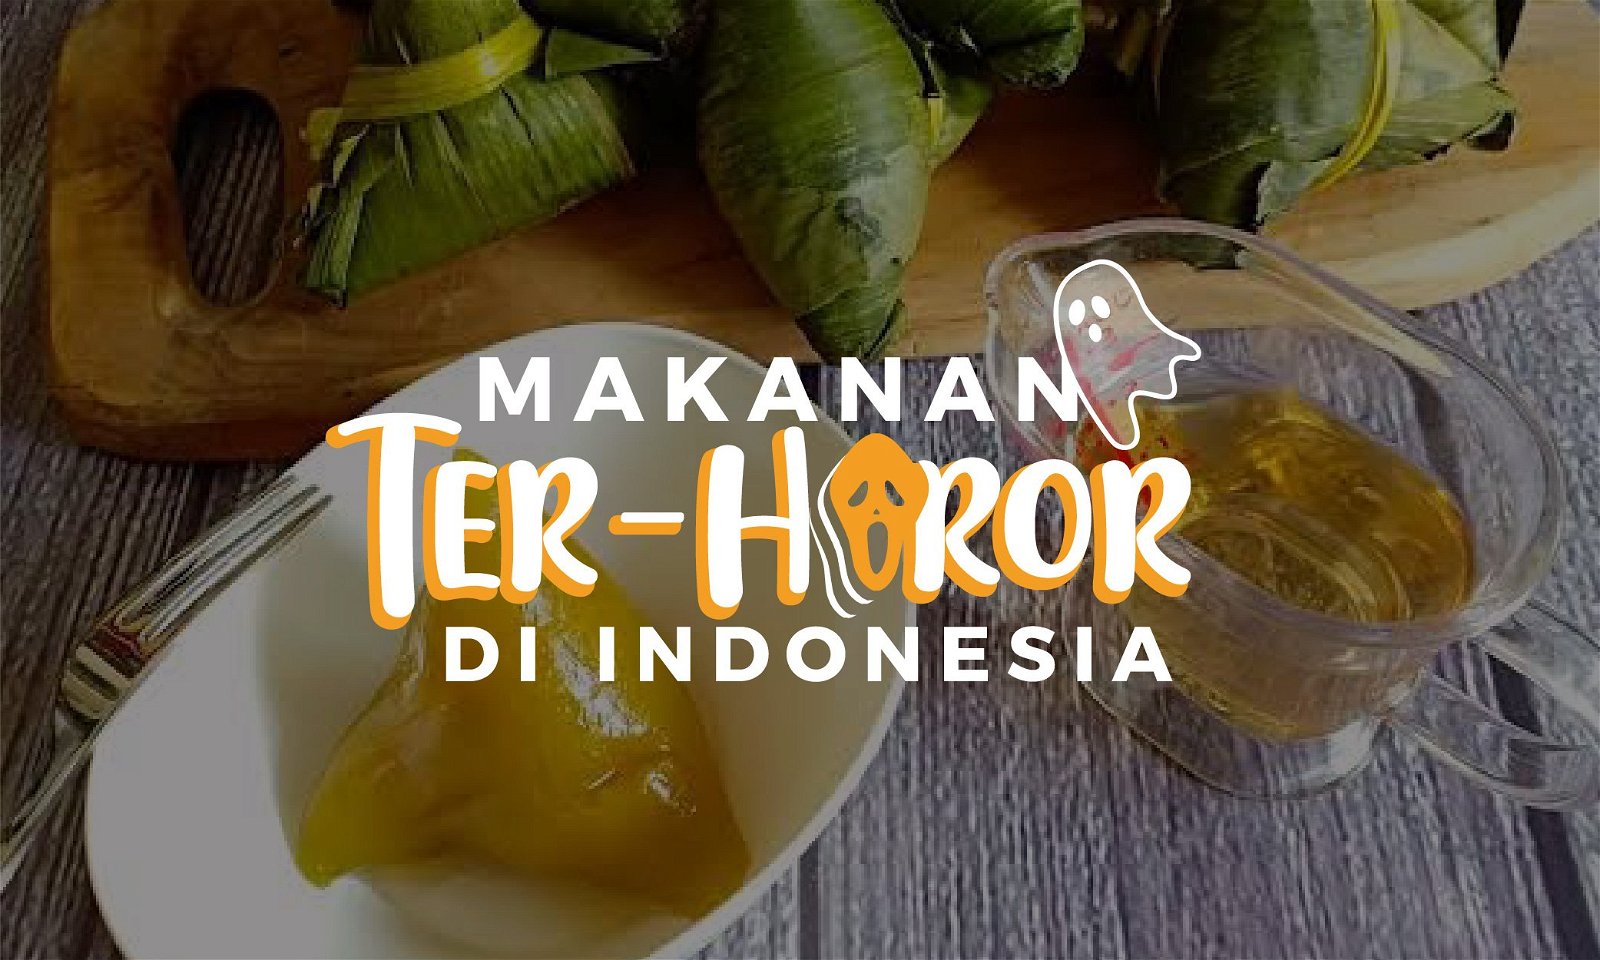 Ini Dia Bahan Makanan Paling Mistis di Indonesia